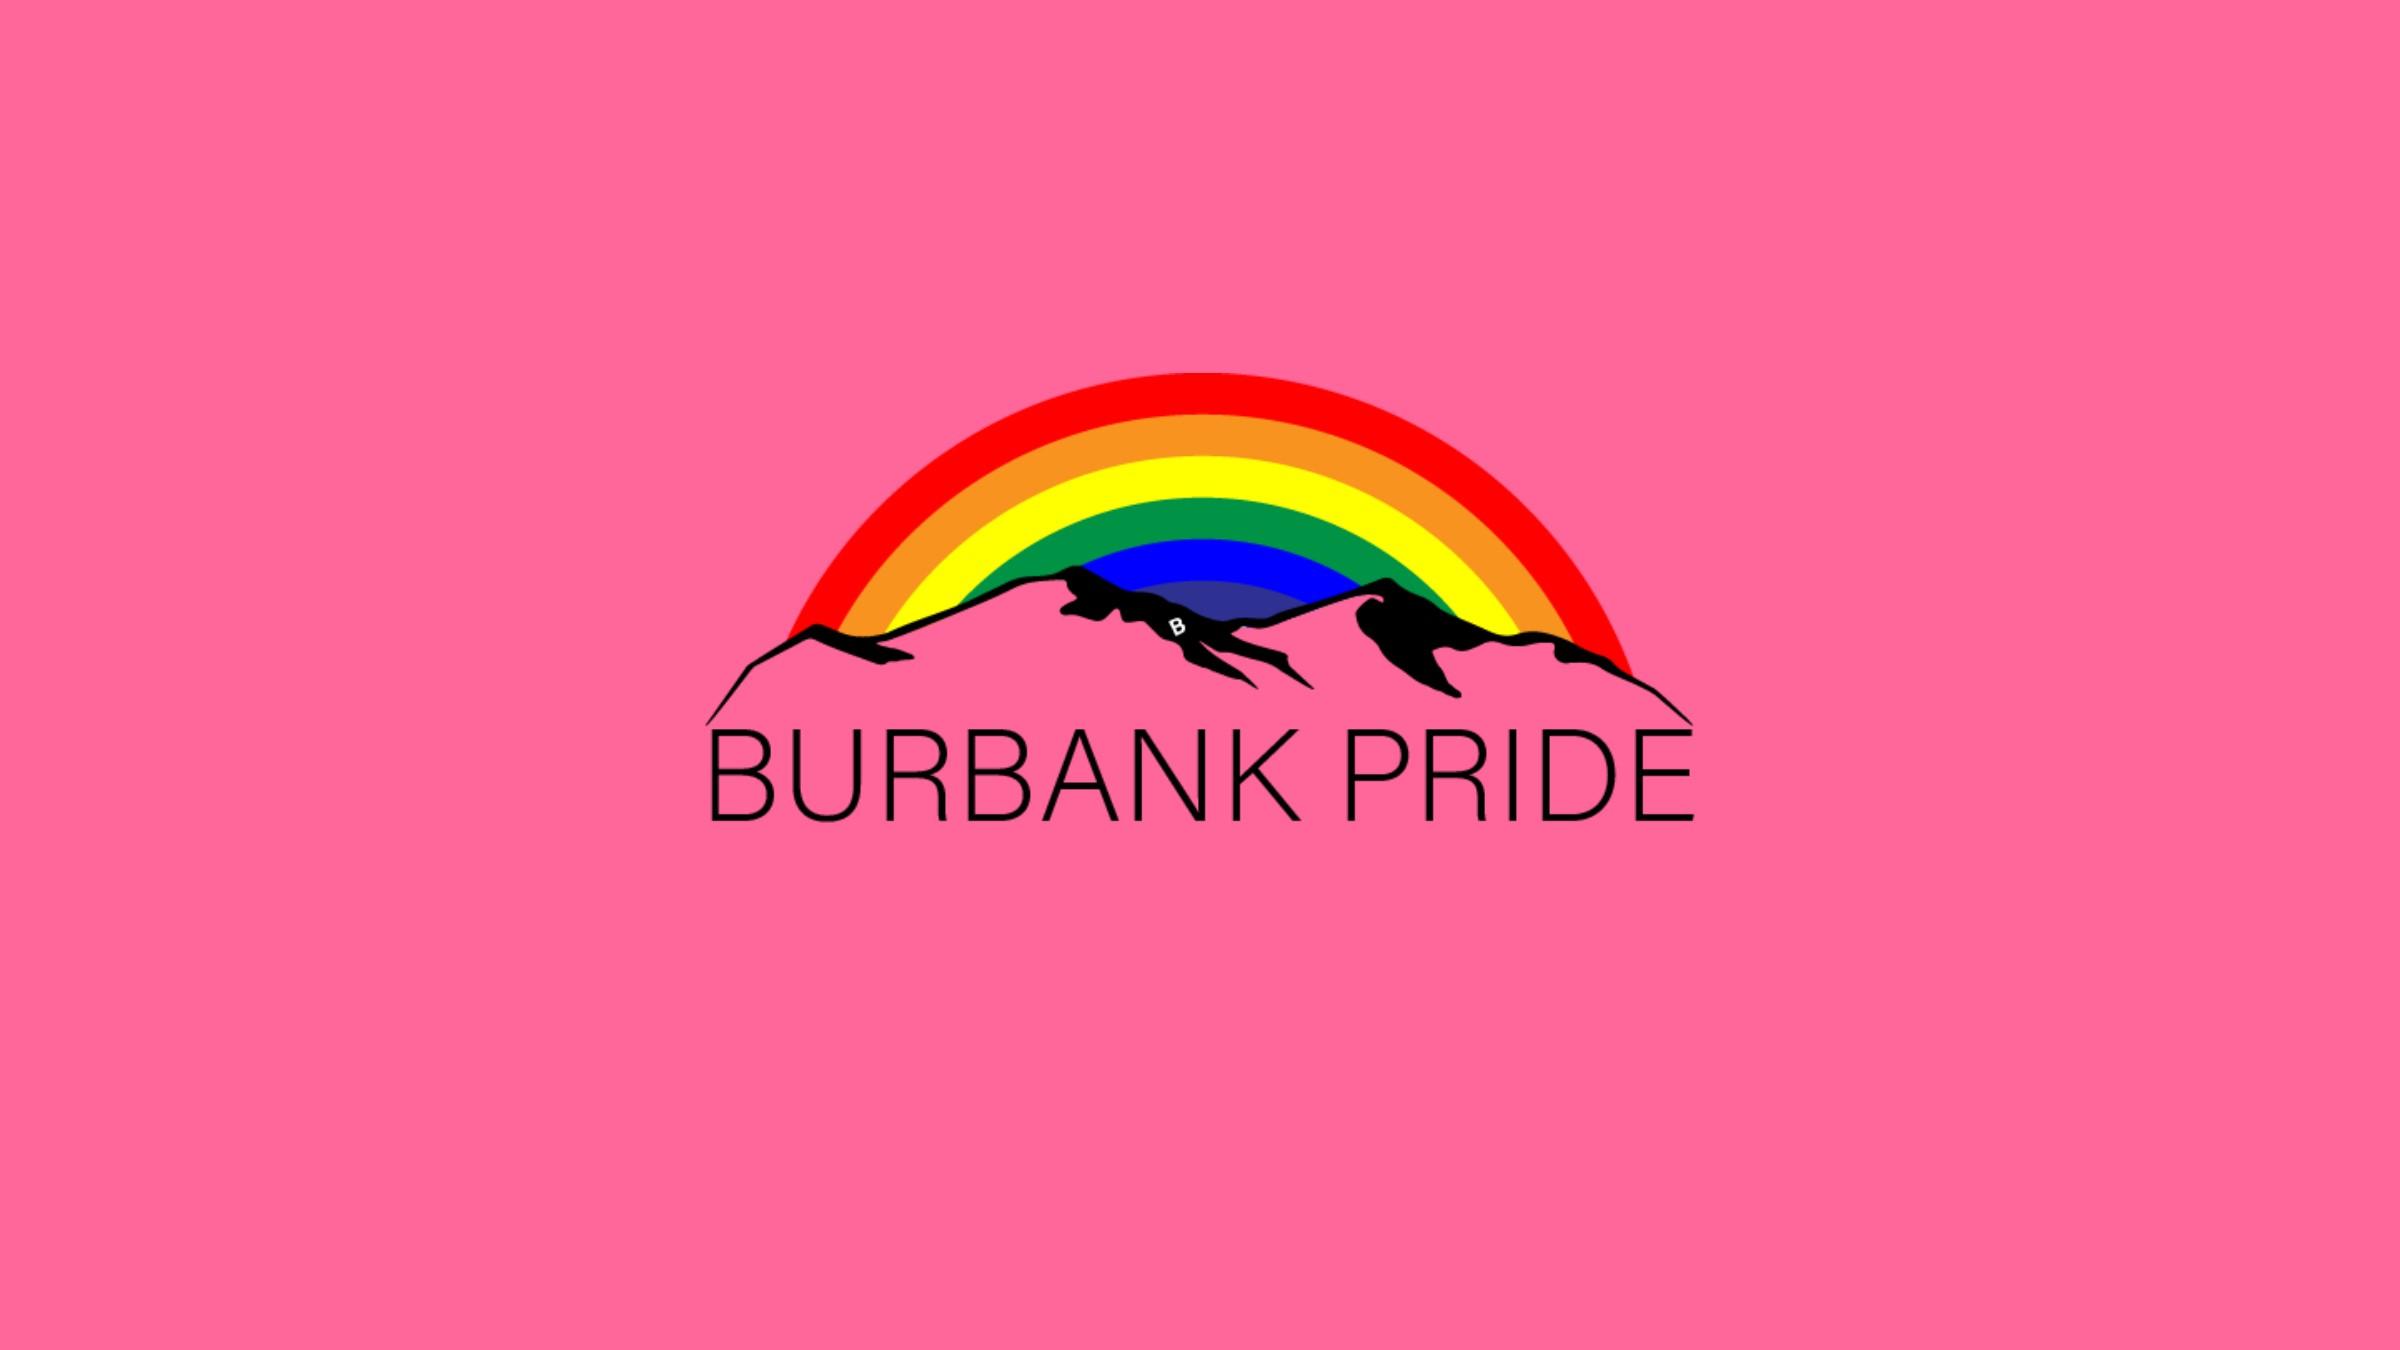 Burbank Pride